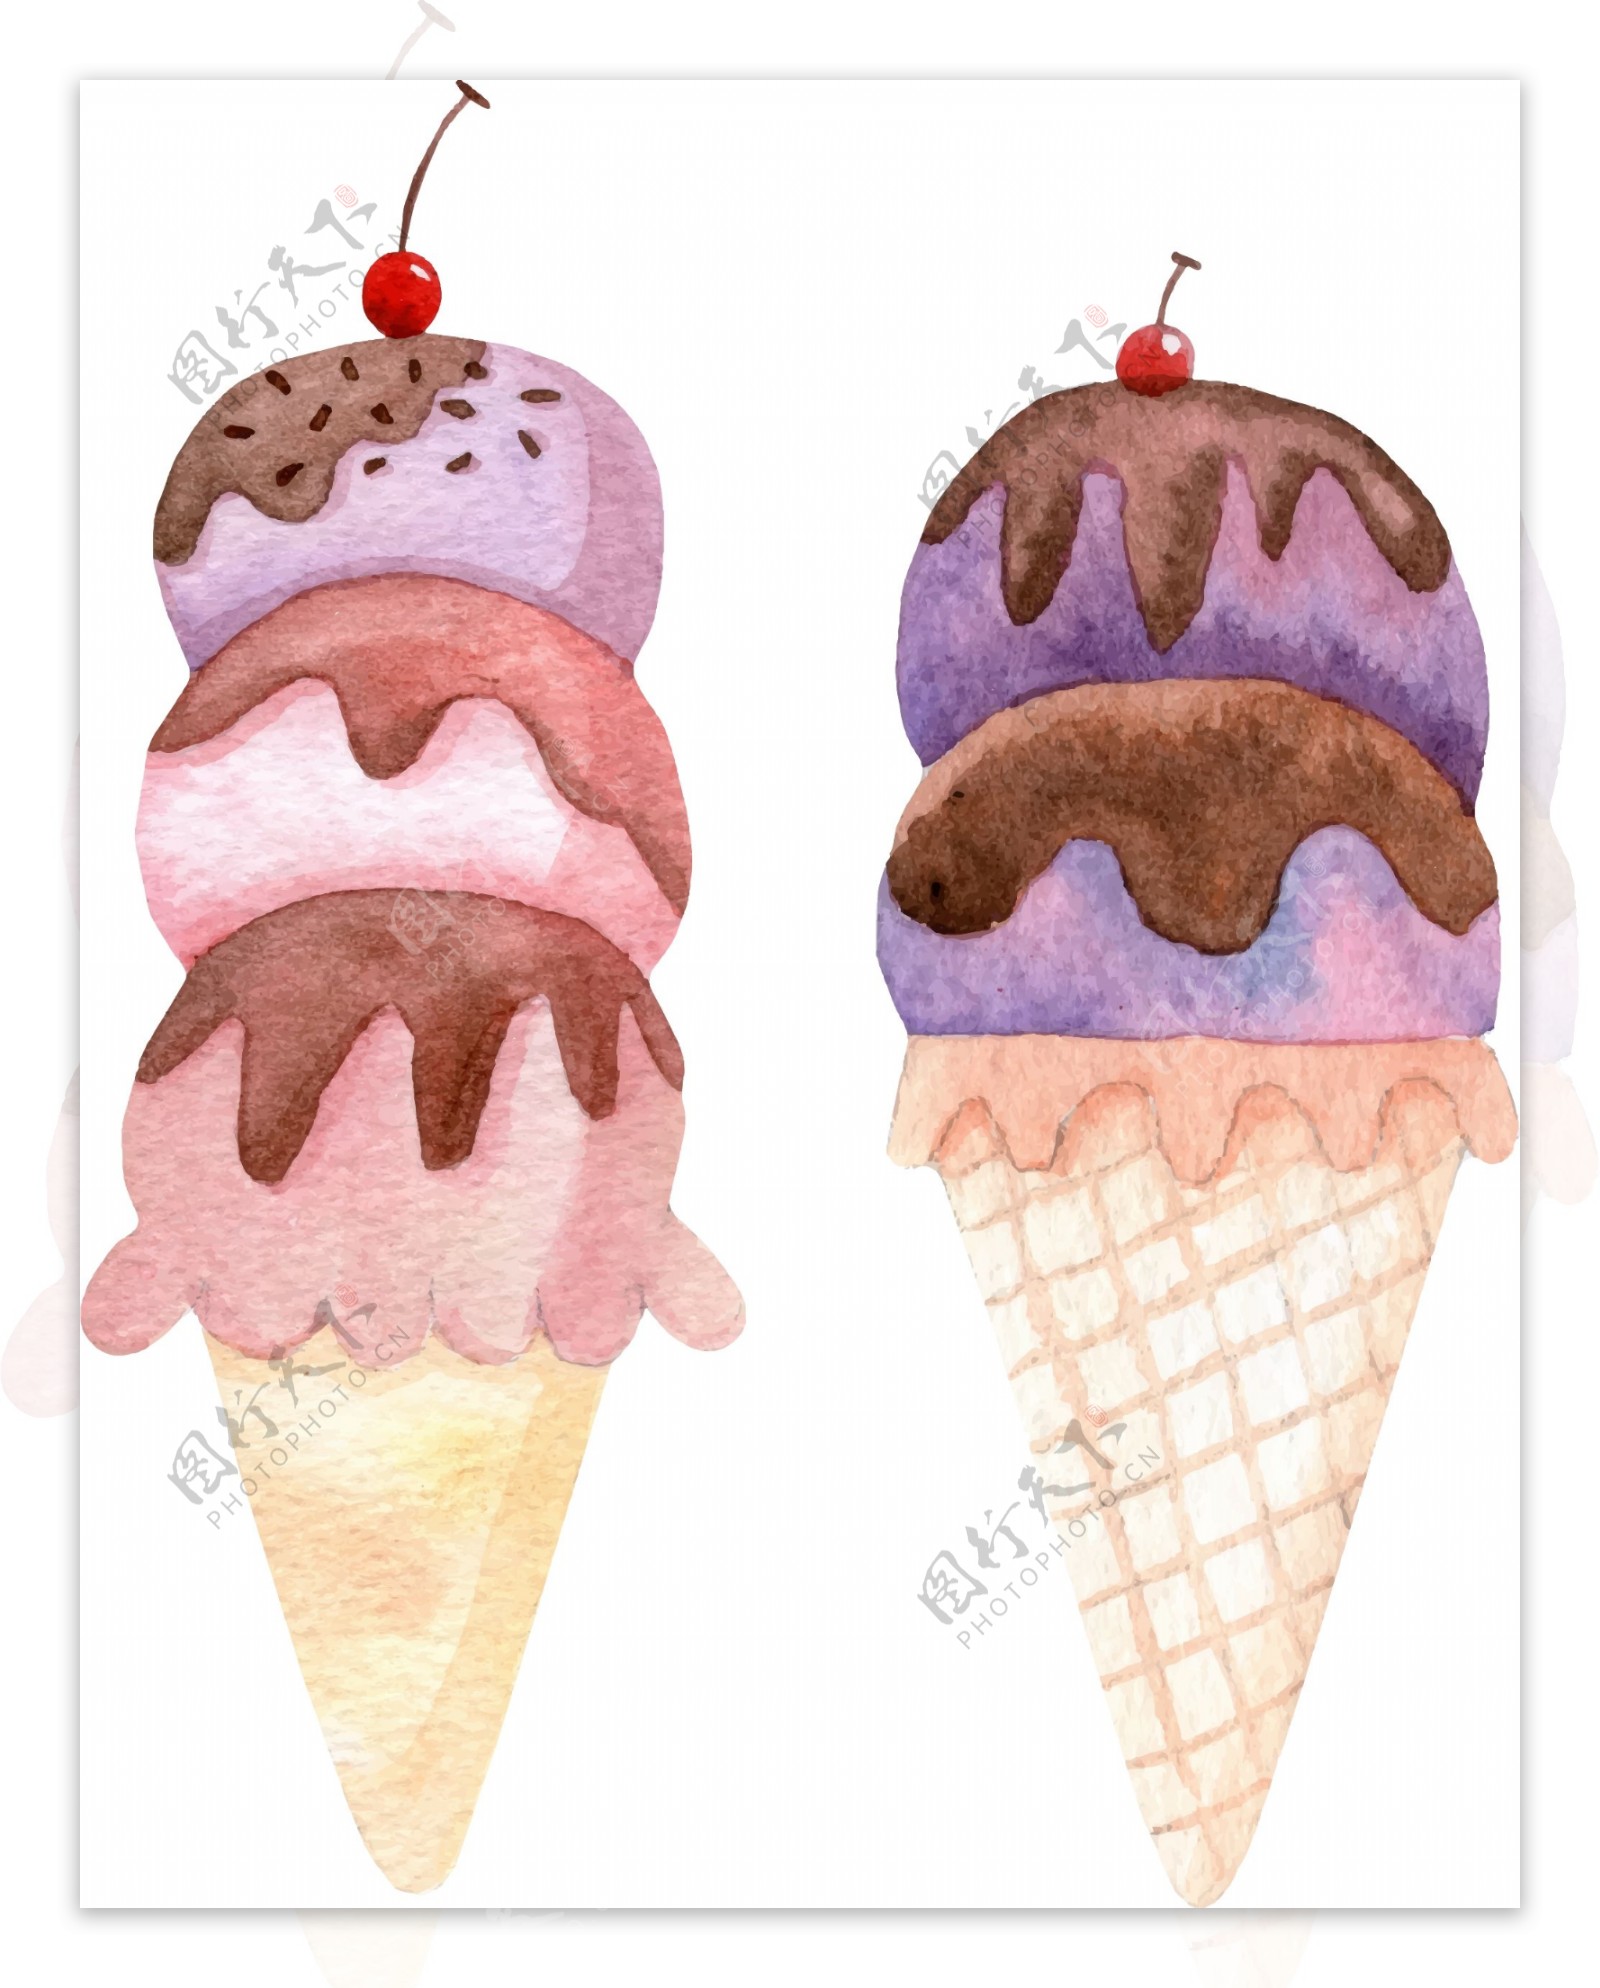 冰淇淋图片